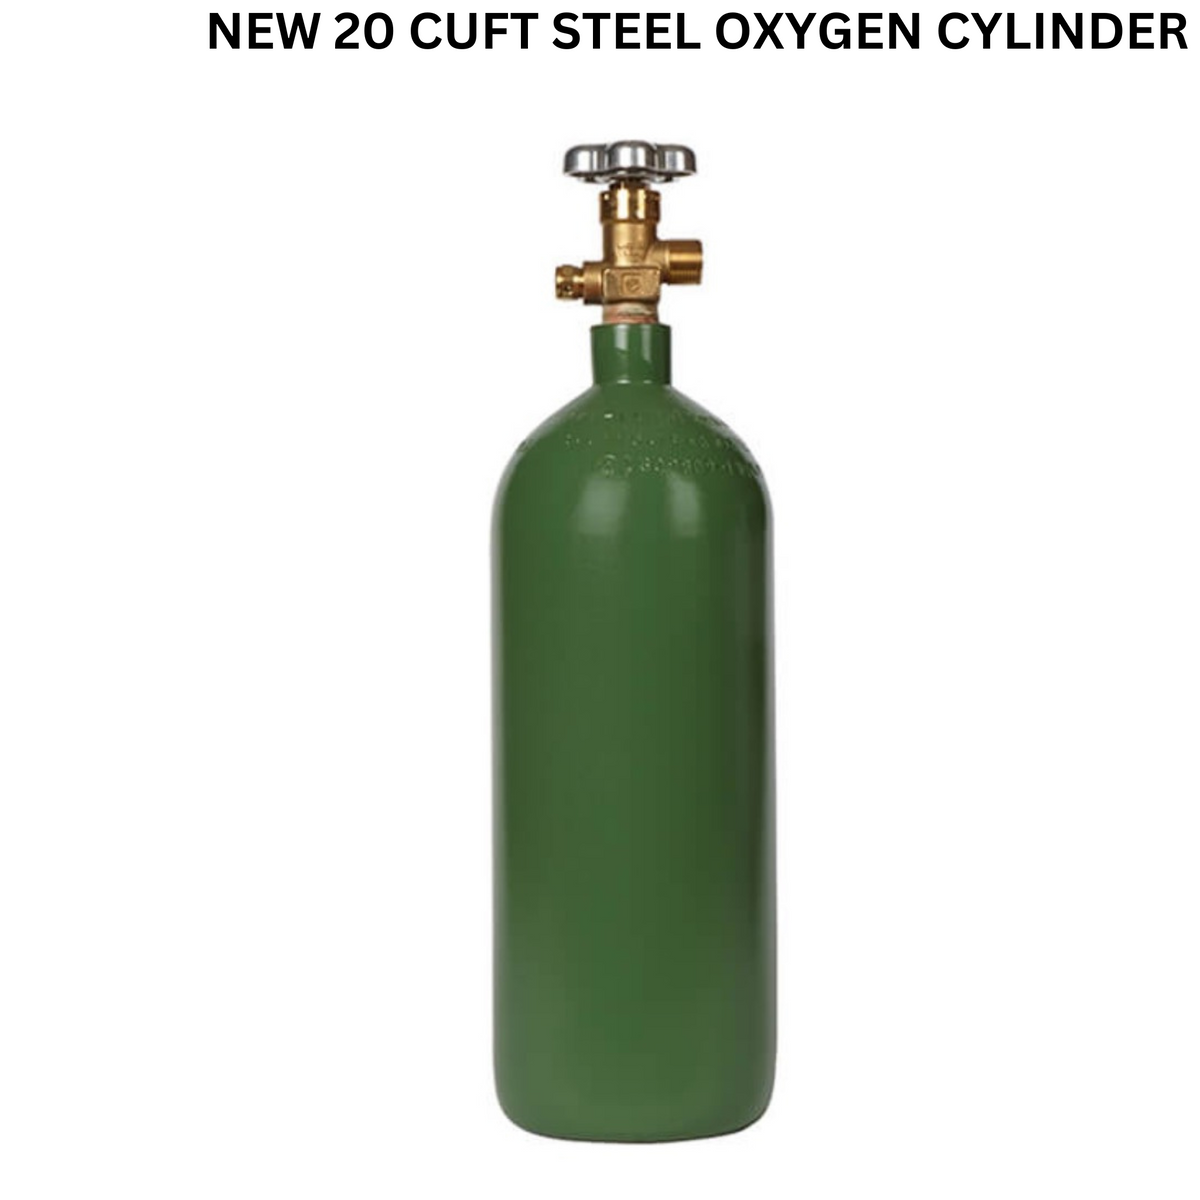 NEW 20 CUFT STEEL OXYGEN CYLINDER